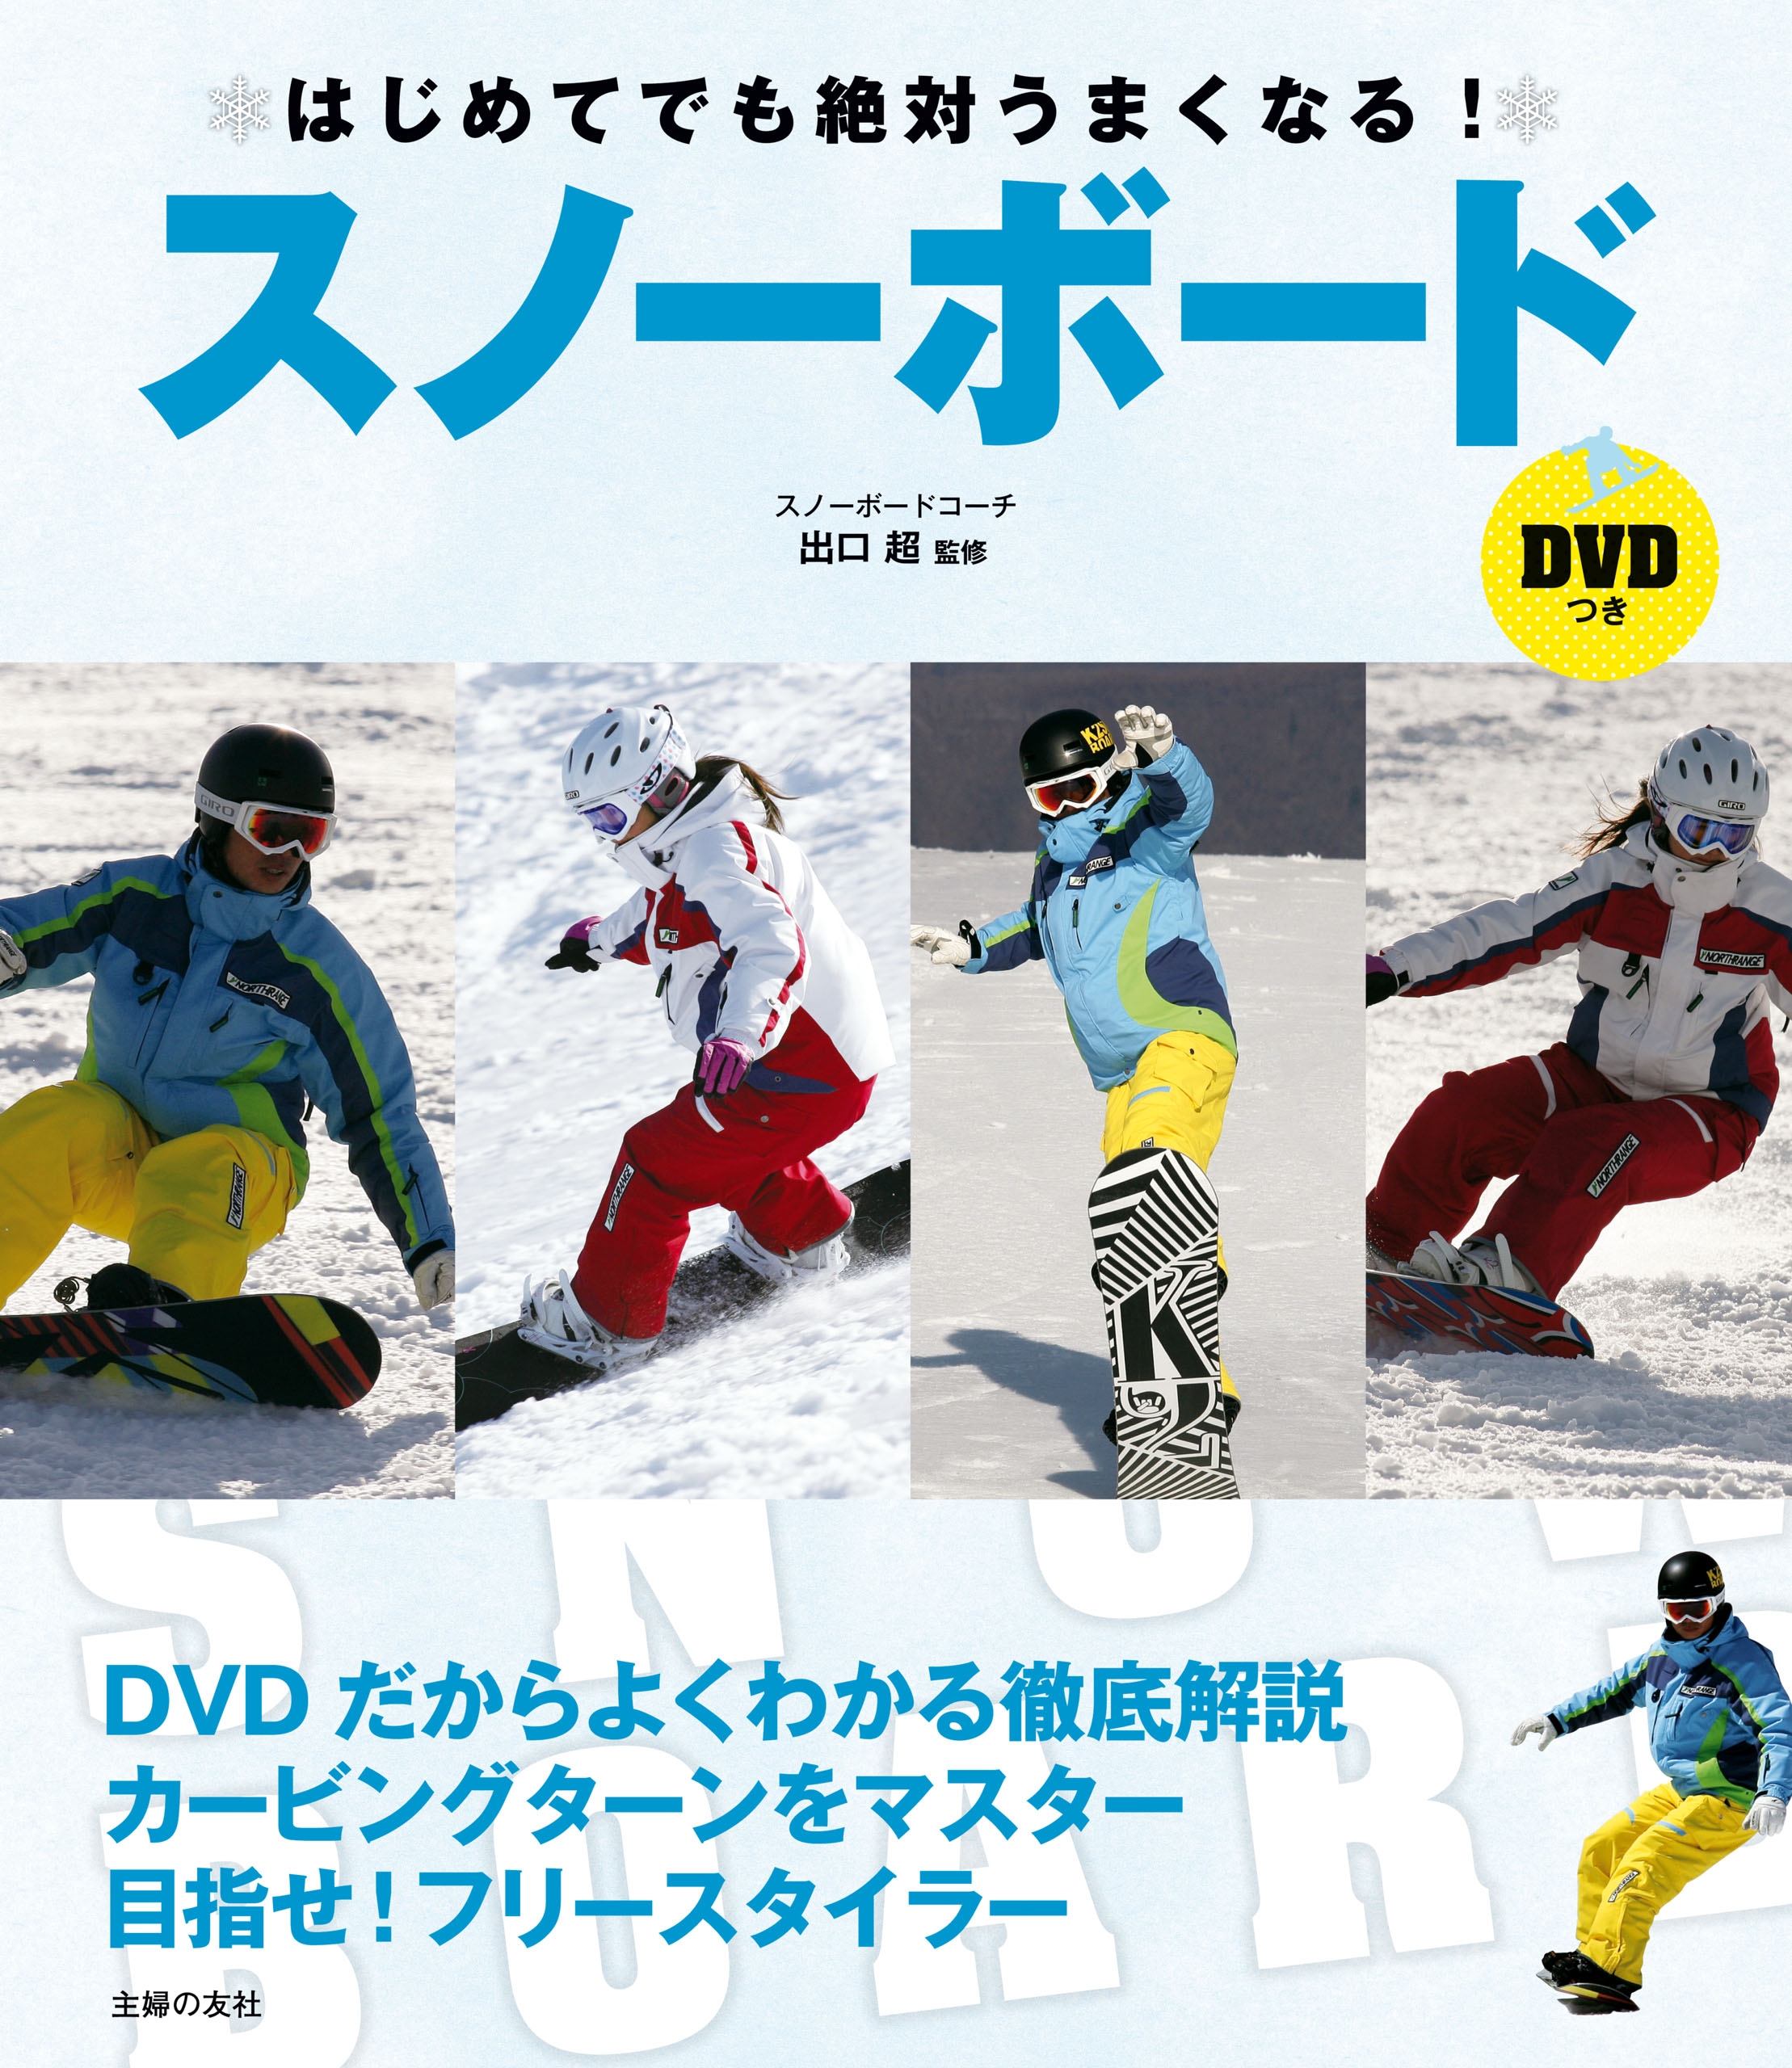 カービング DVD グラトリ グランドトリック カービングターン 2枚組